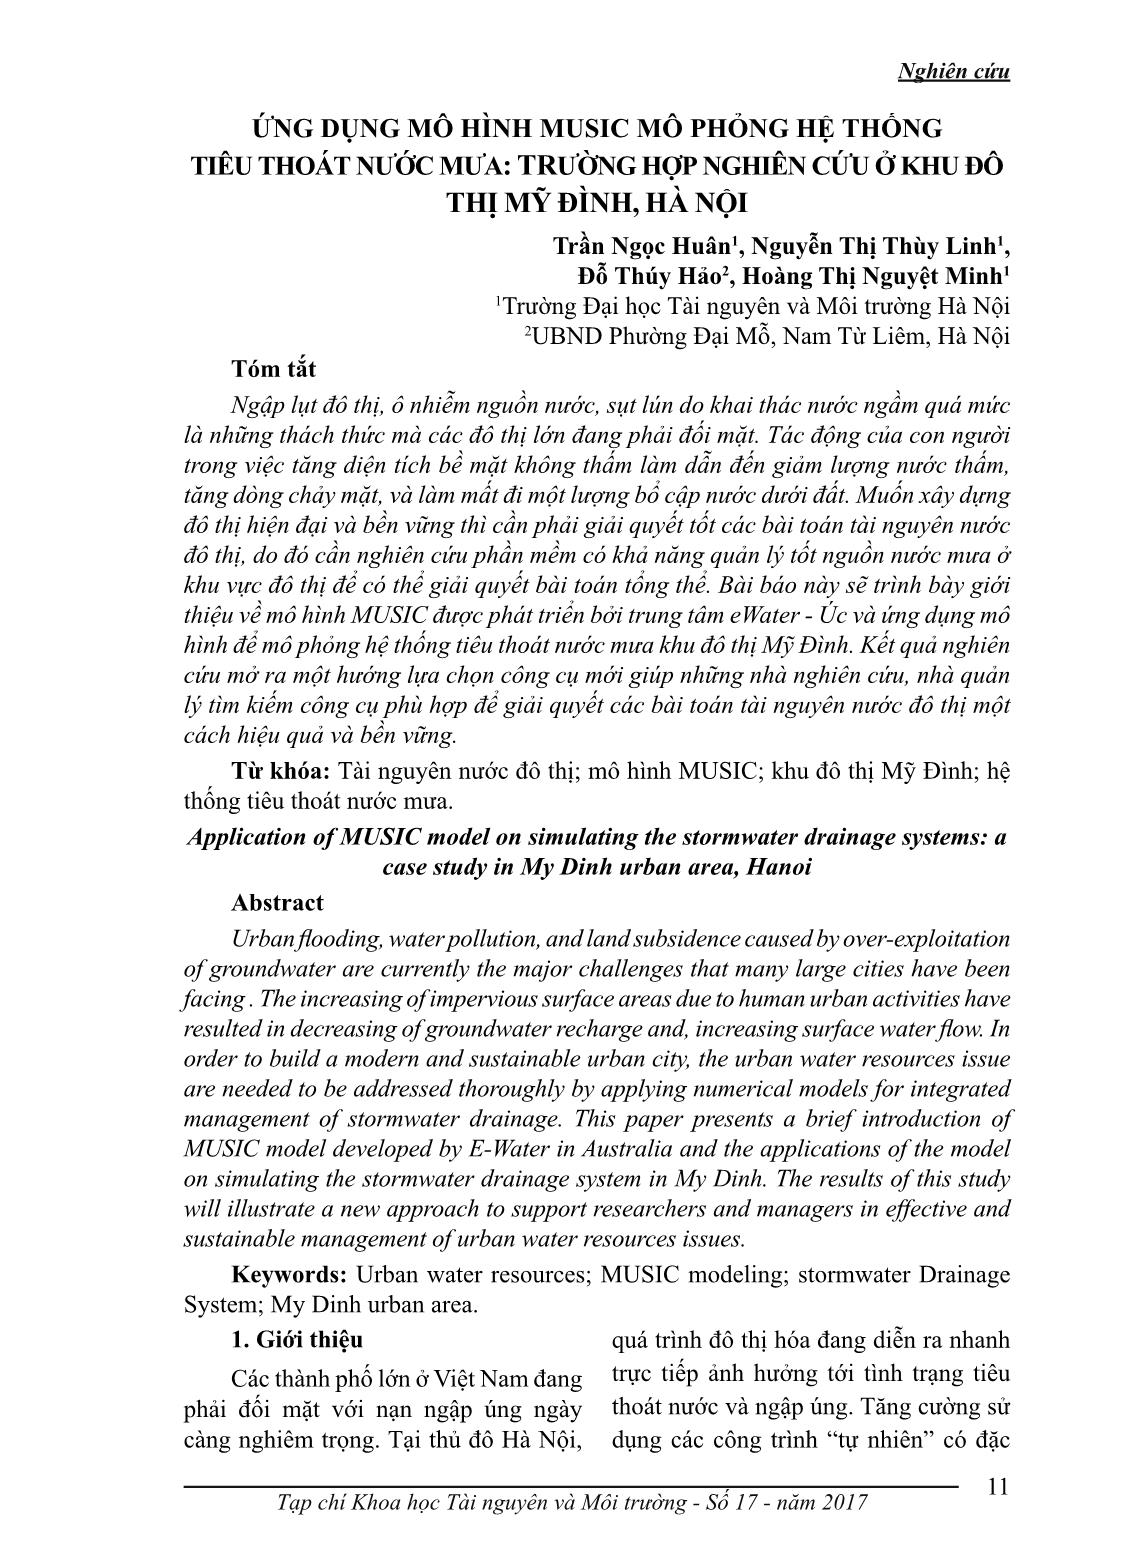 Ứng dụng mô hình music mô phỏng hệ thống tiêu thoát nước mưa: trường hợp nghiên cứu ở khu đô thị Mỹ Đình, Hà Nội trang 1